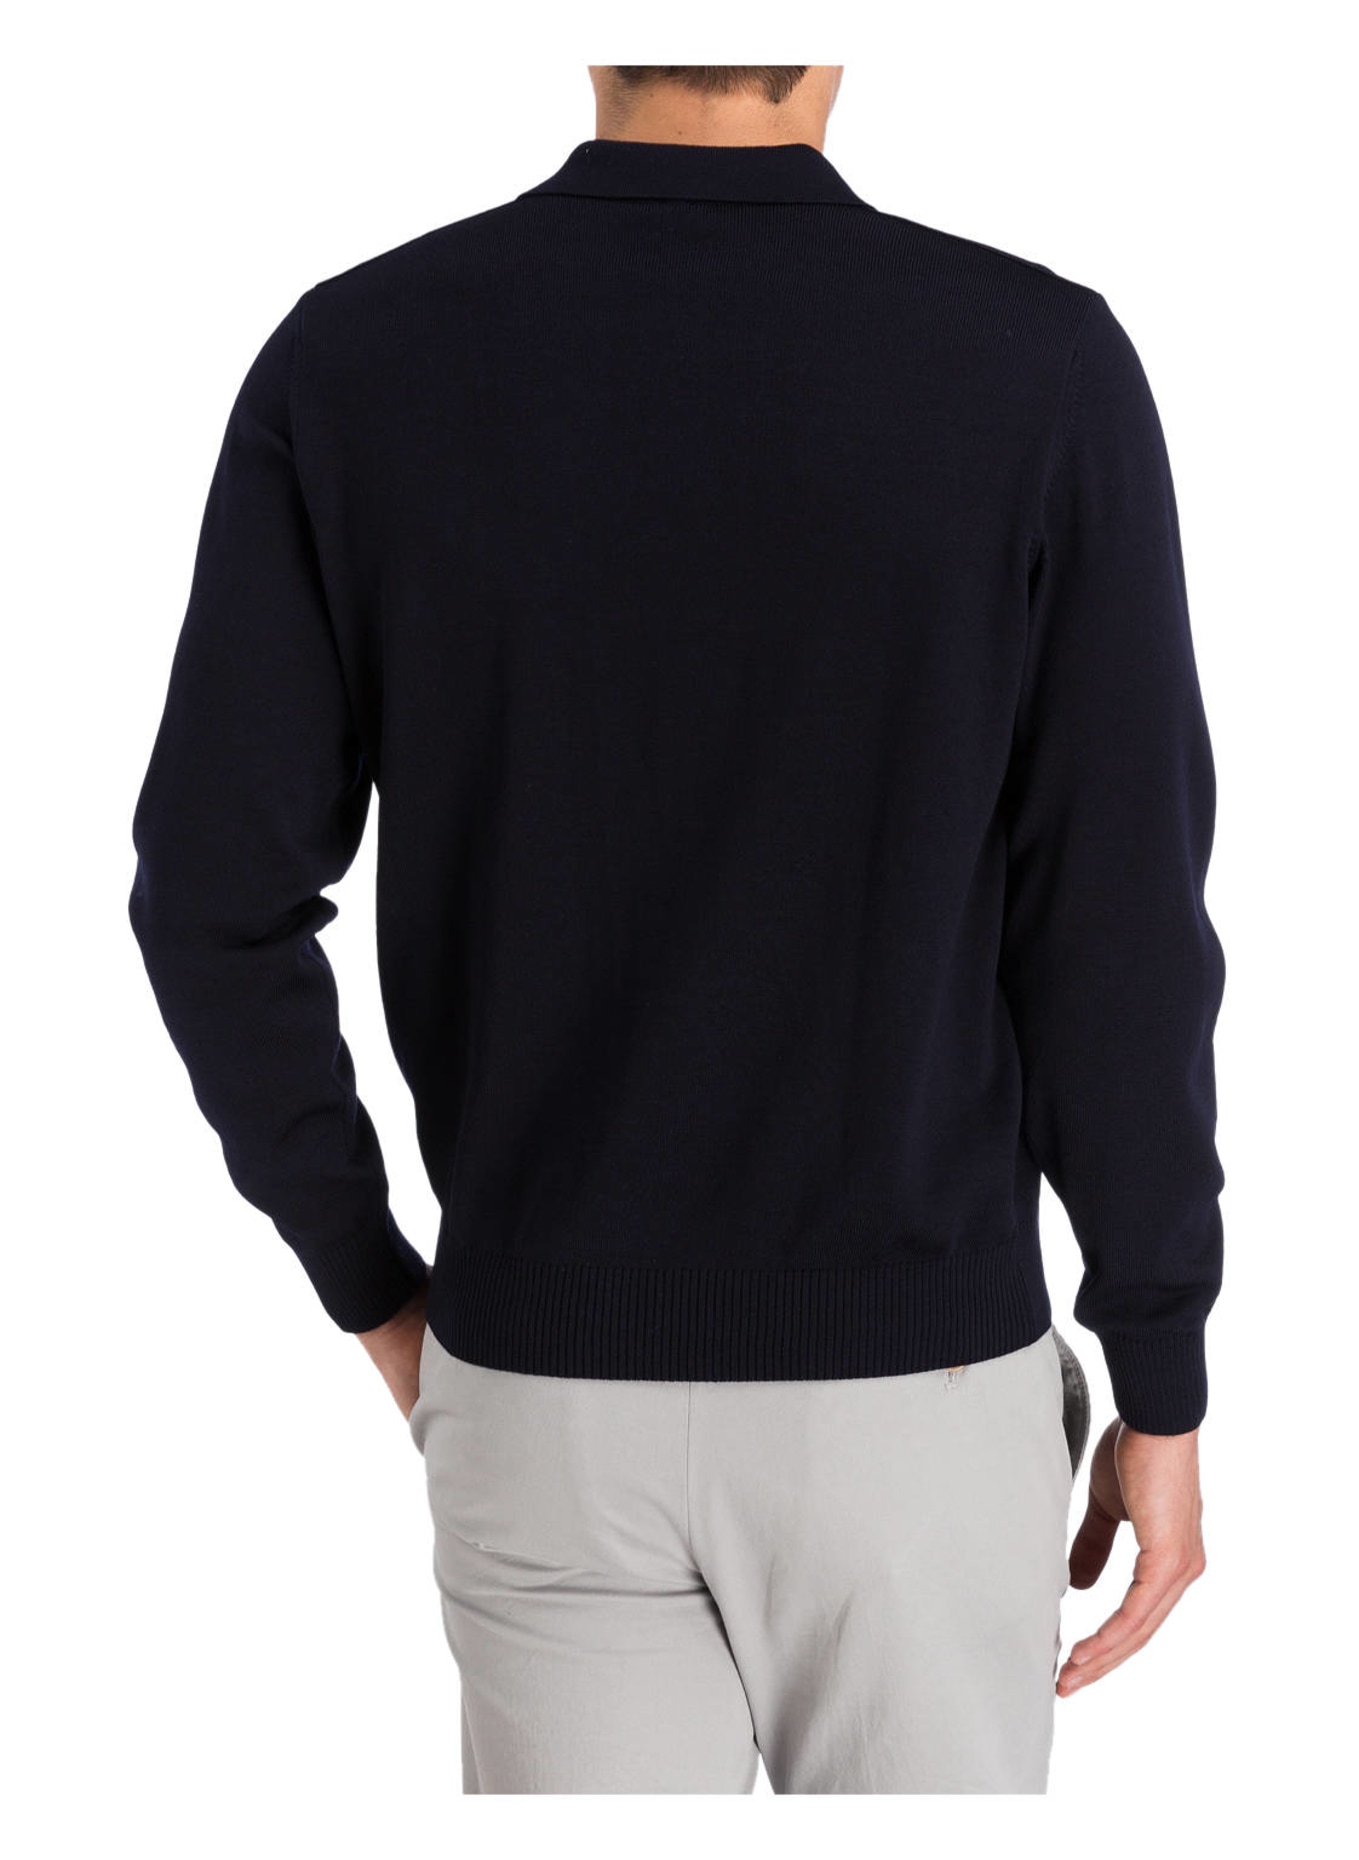 MAERZ MUENCHEN Pullover mit Polokragen, Farbe: MARINE (Bild 3)